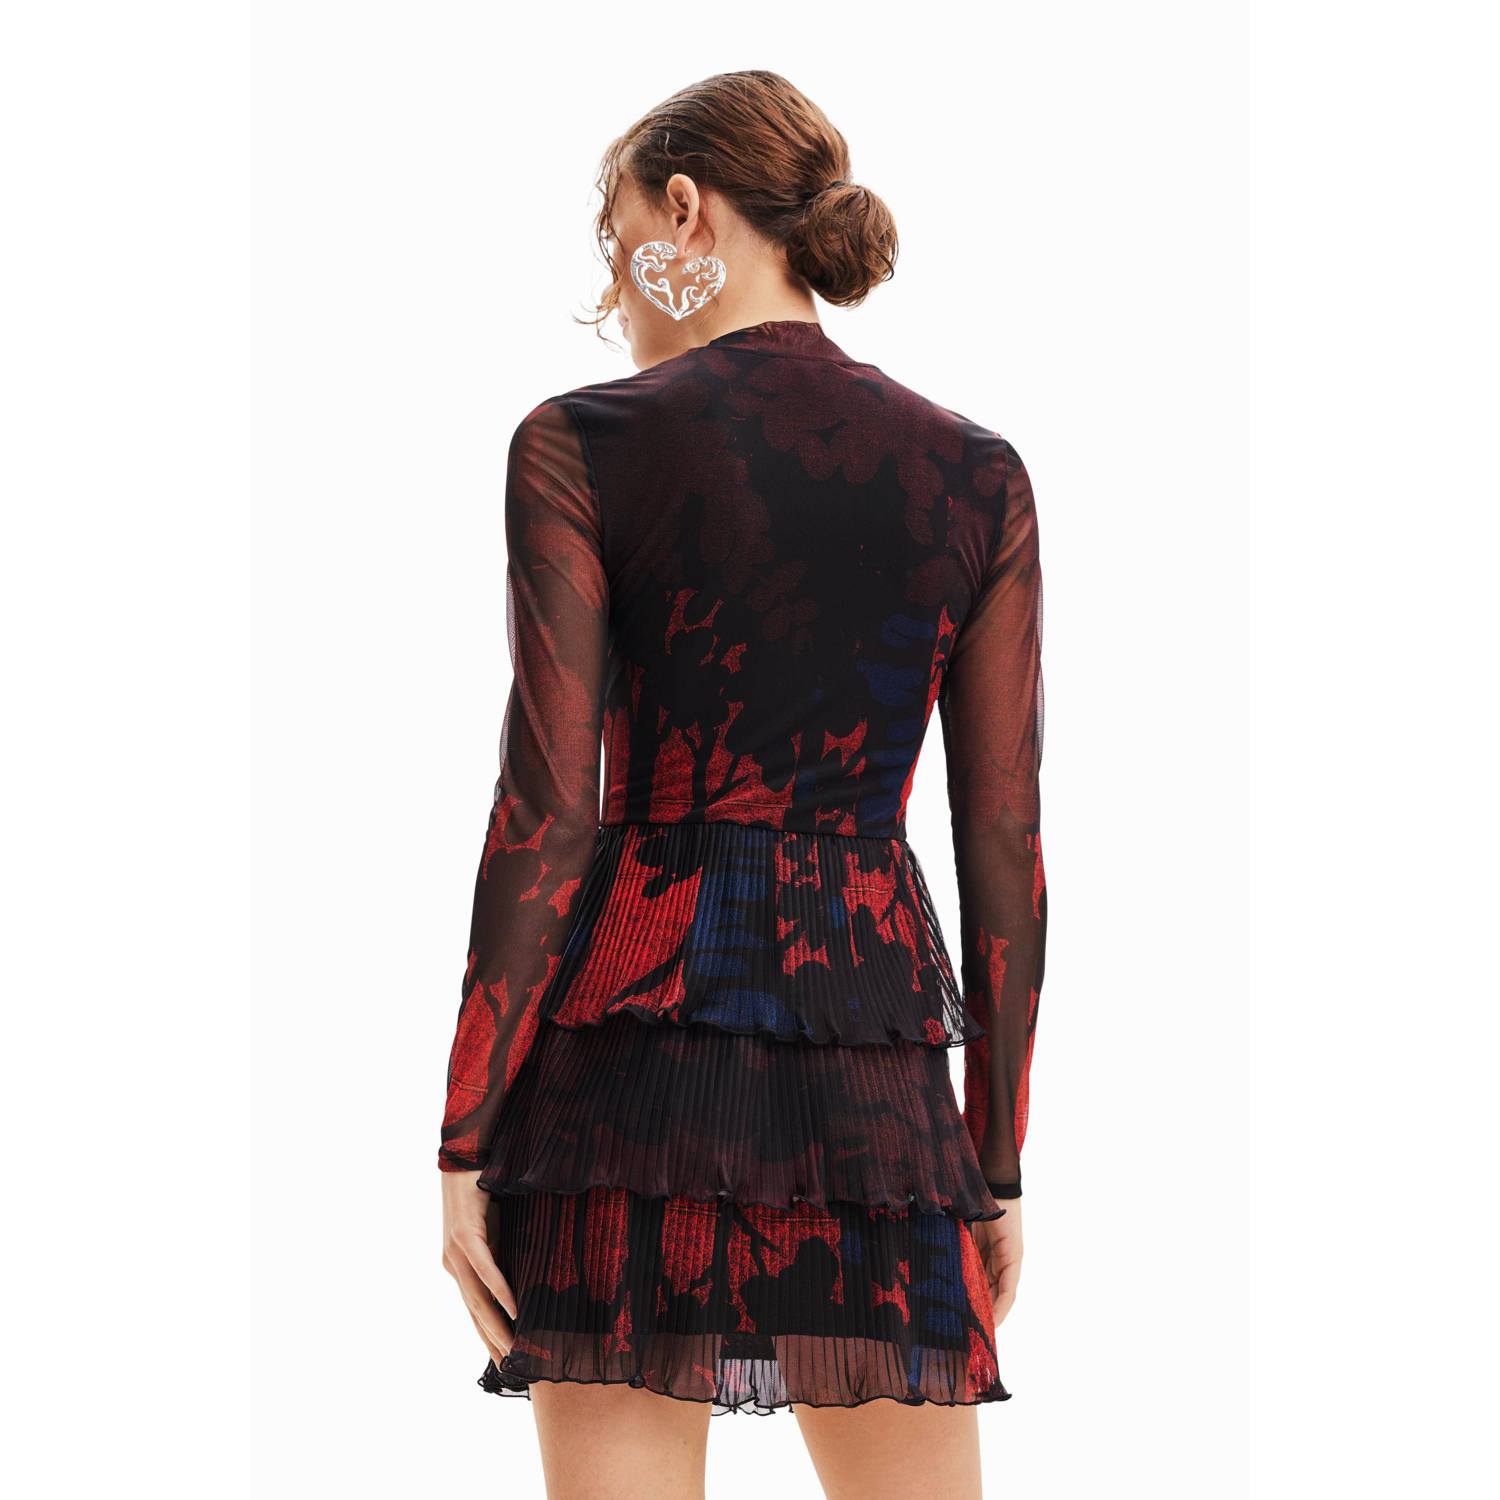 Desigual mesh jurk met all over print zwart rood blauw